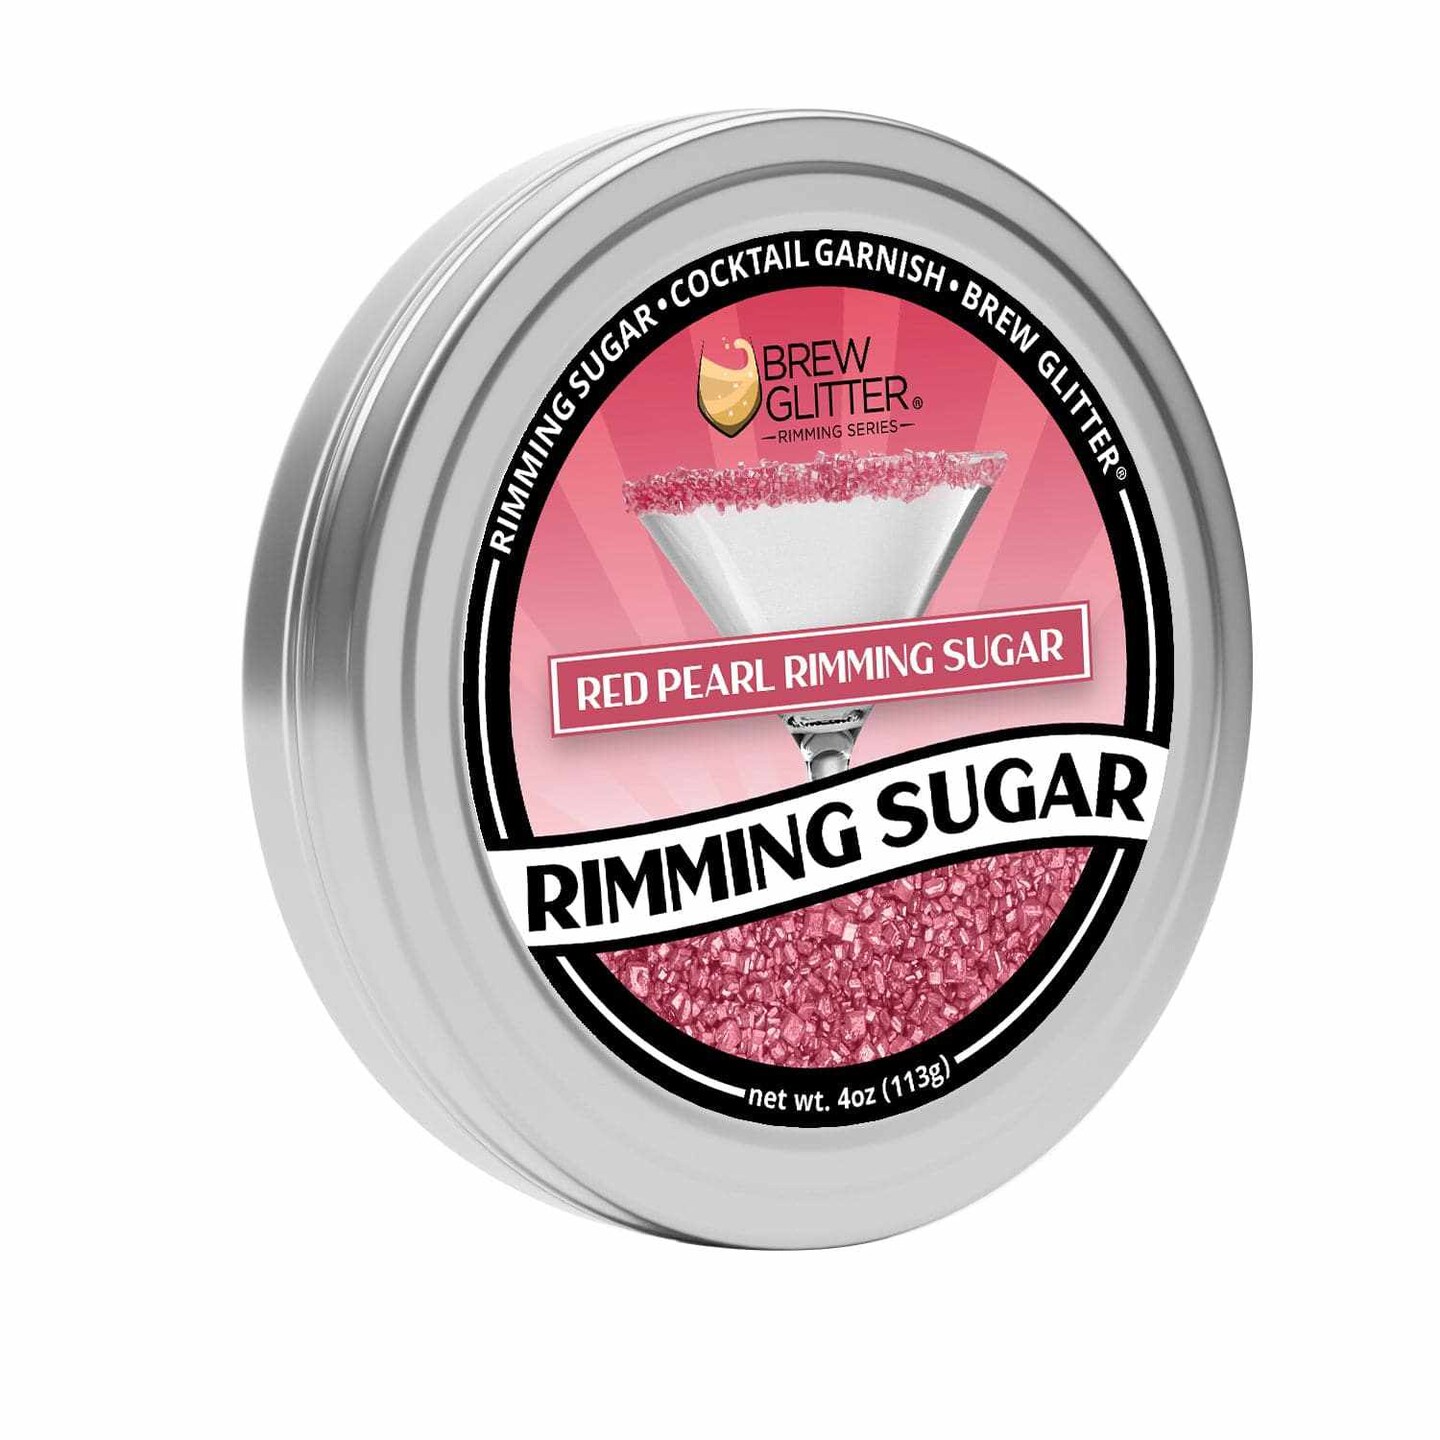 Red Pearl Rimming Sugar